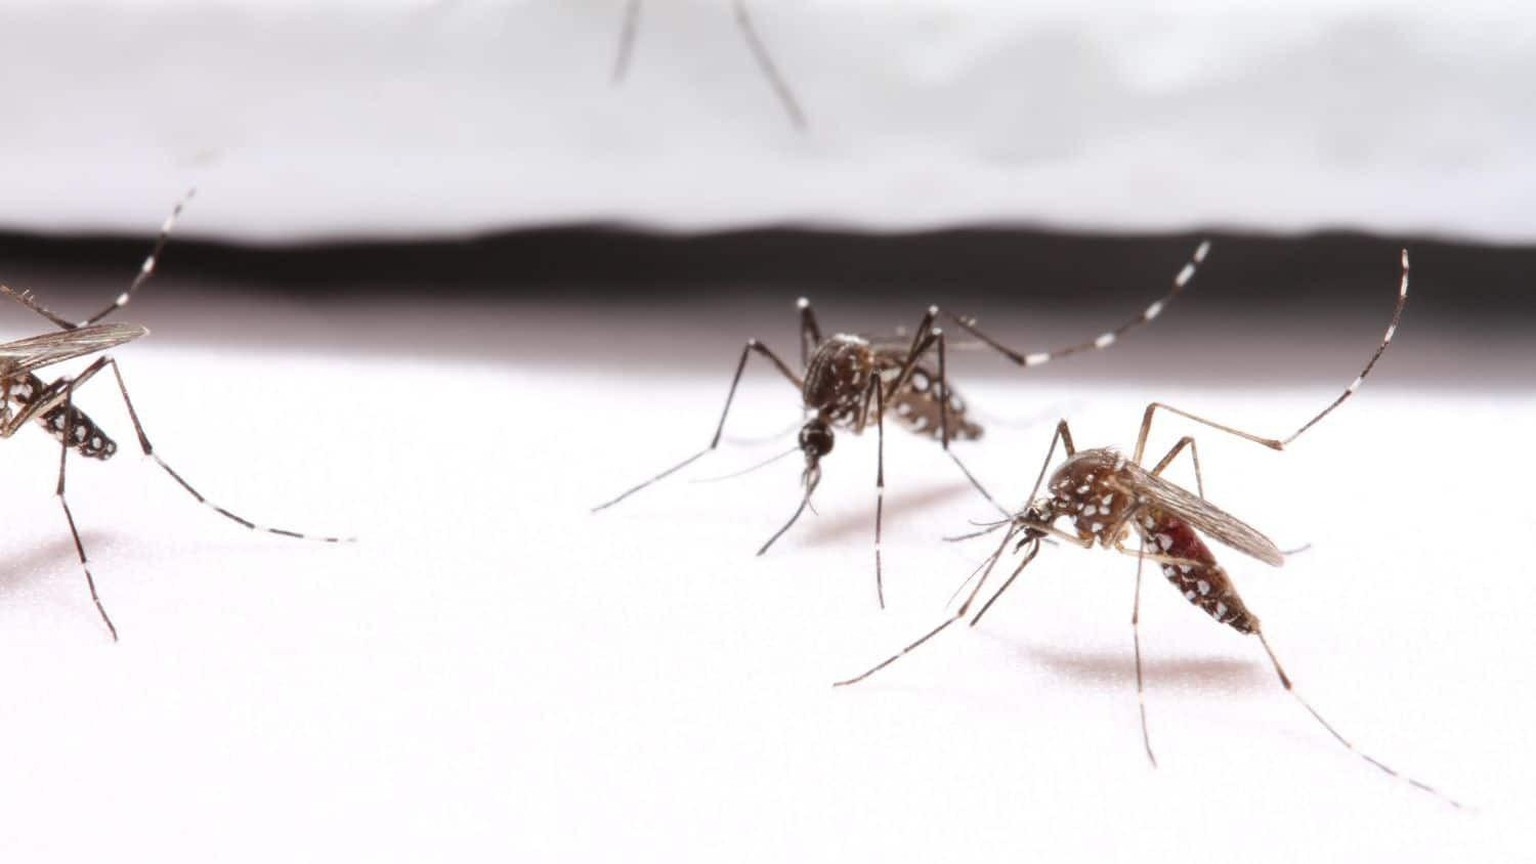 Stechmücken auf einem speziellen, mückenresistenten Stoff.
https://news.ncsu.edu/2021/07/mosquito-resistant-clothing-prevents-bites-in-trials/